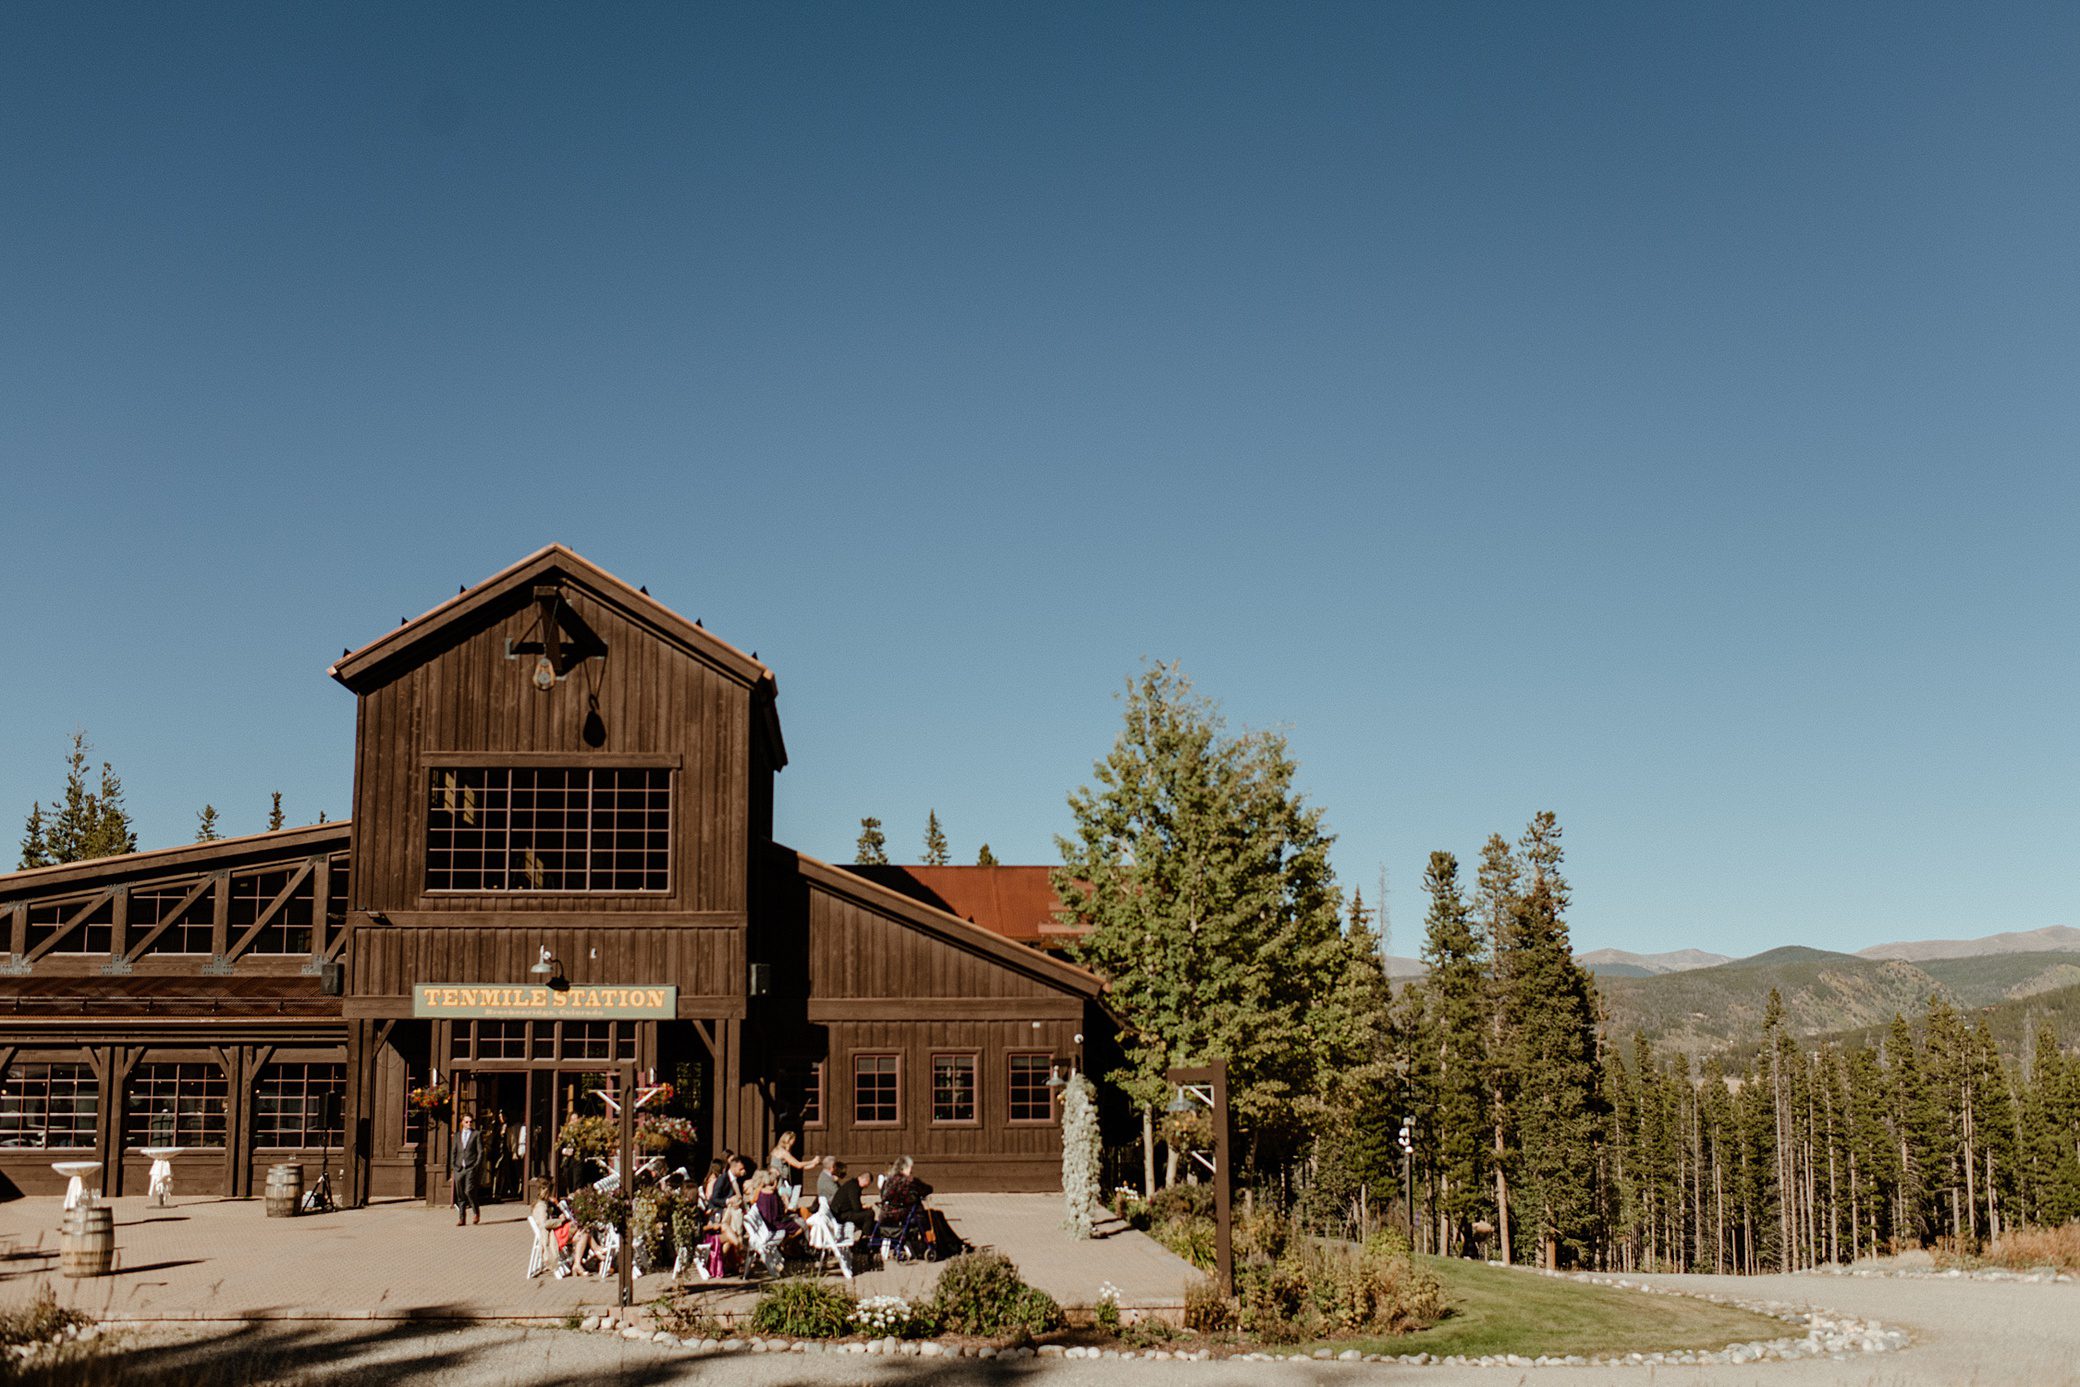 View of Ten Mile Station wedding venue in Breckenridge, Colorado